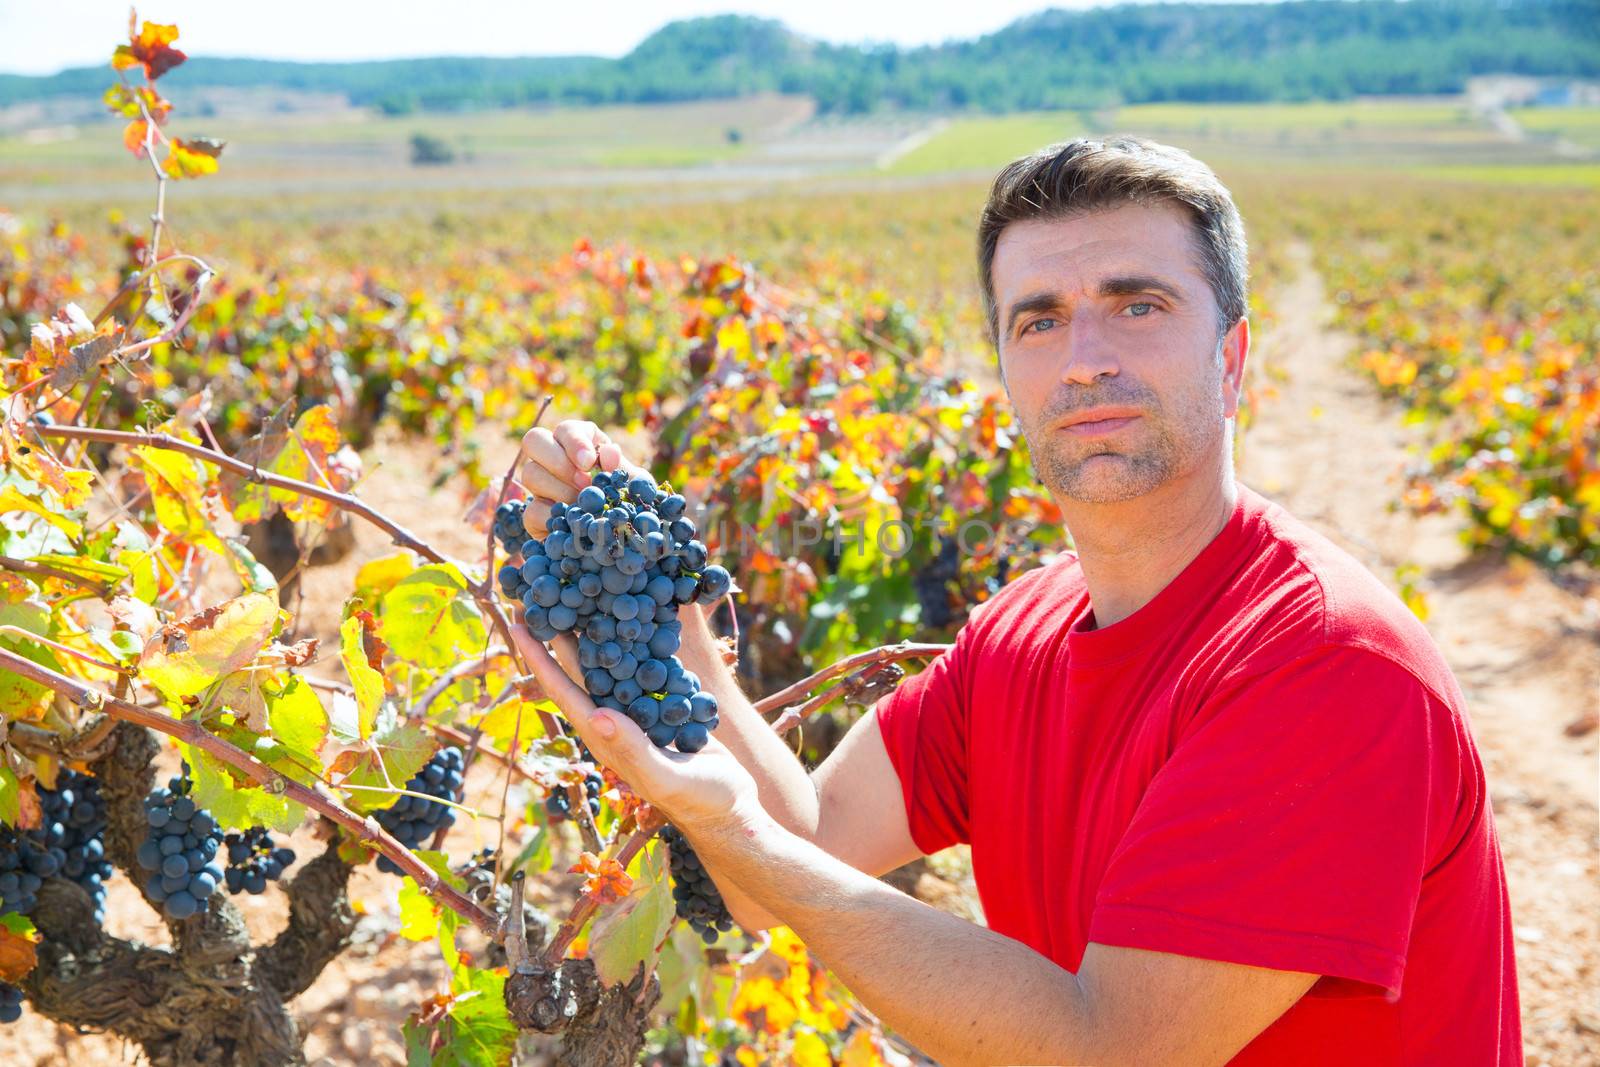 Winemaker harvesting Bobal grapes in mediterranean vineyard fields